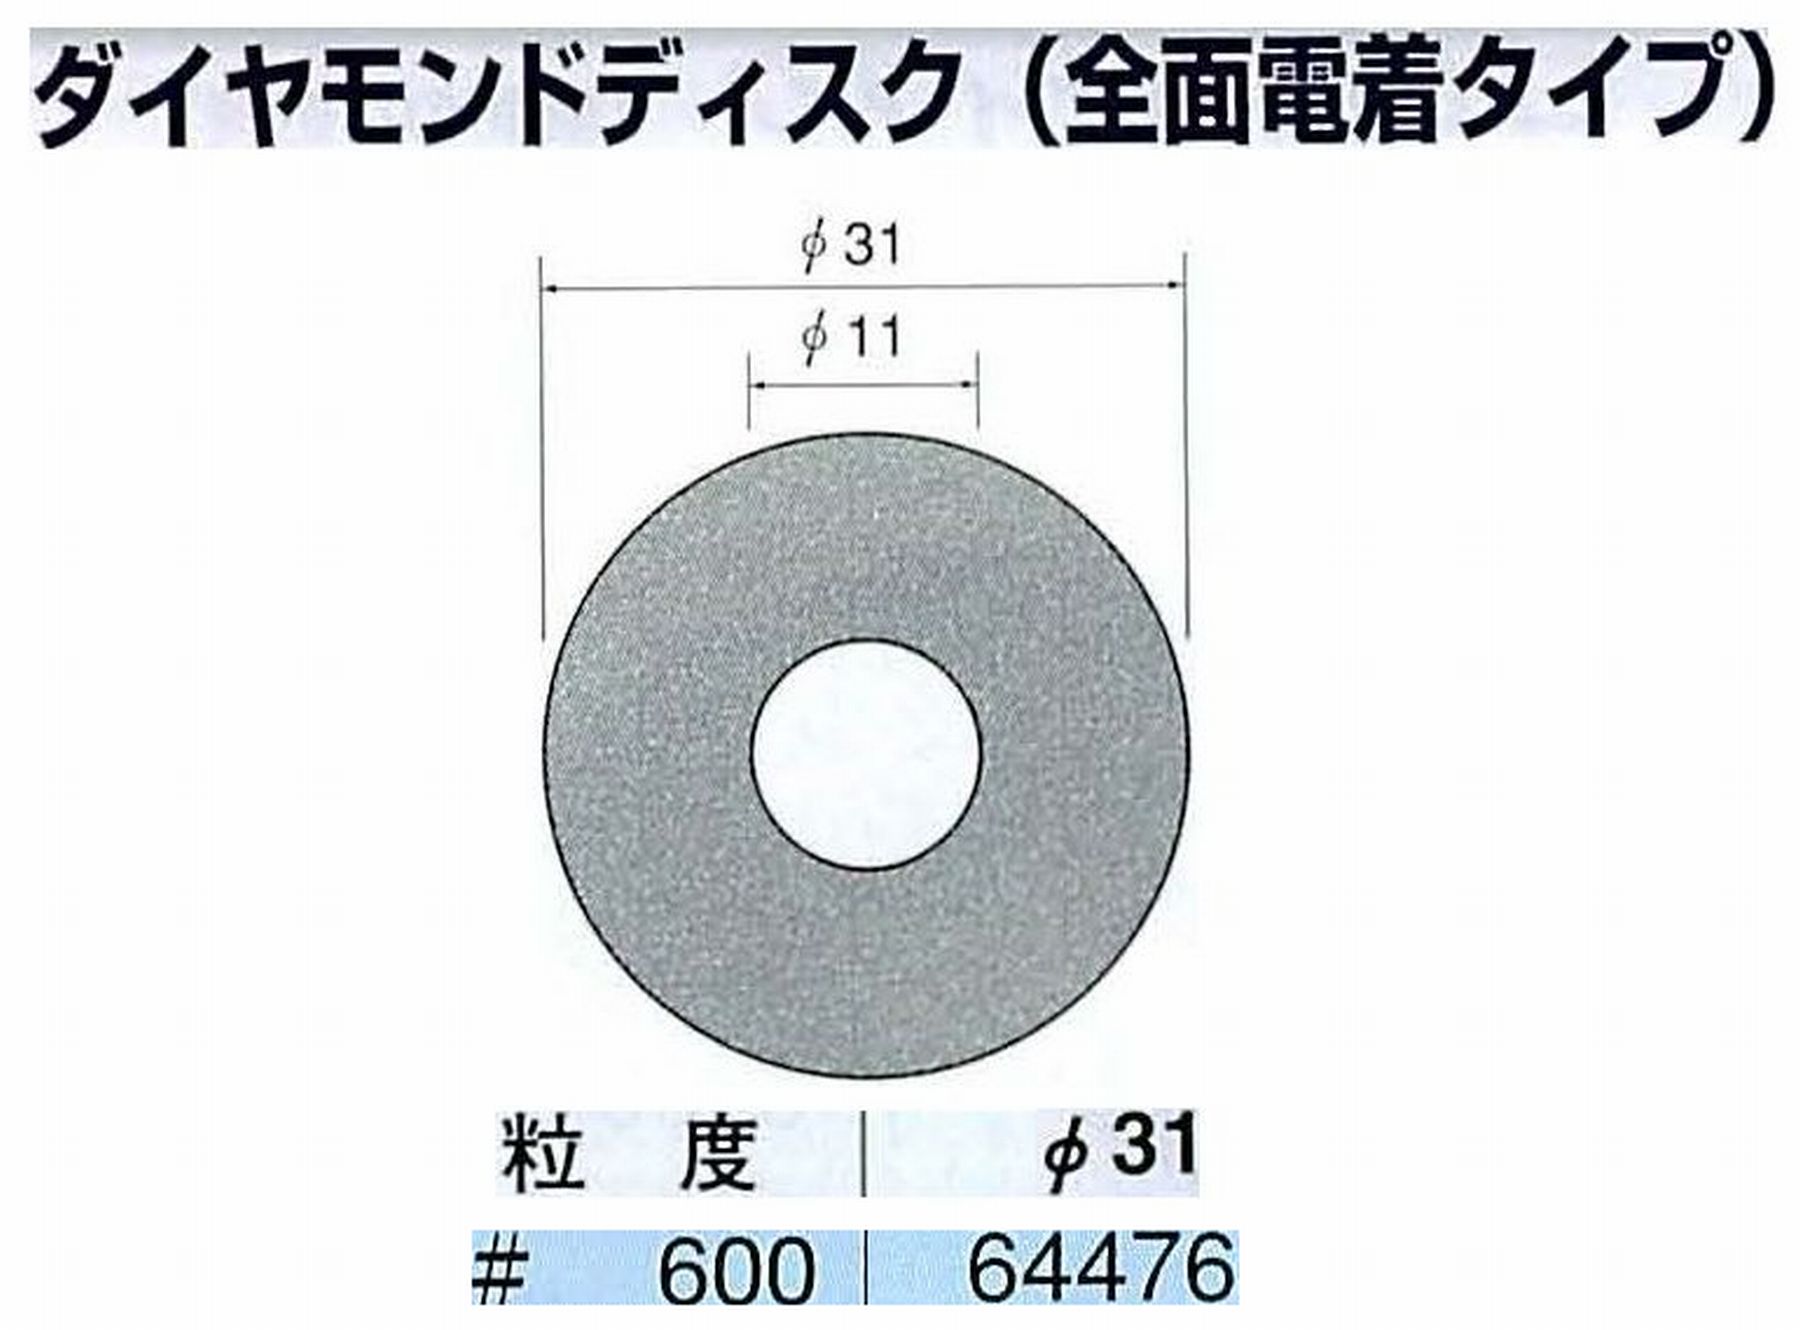 ナカニシ/NAKANISHI アングルグラインダ(電動・エアー) アングルアタッチメント専用工具 ダイヤモンドディスク(全面電着タイプ) 64476